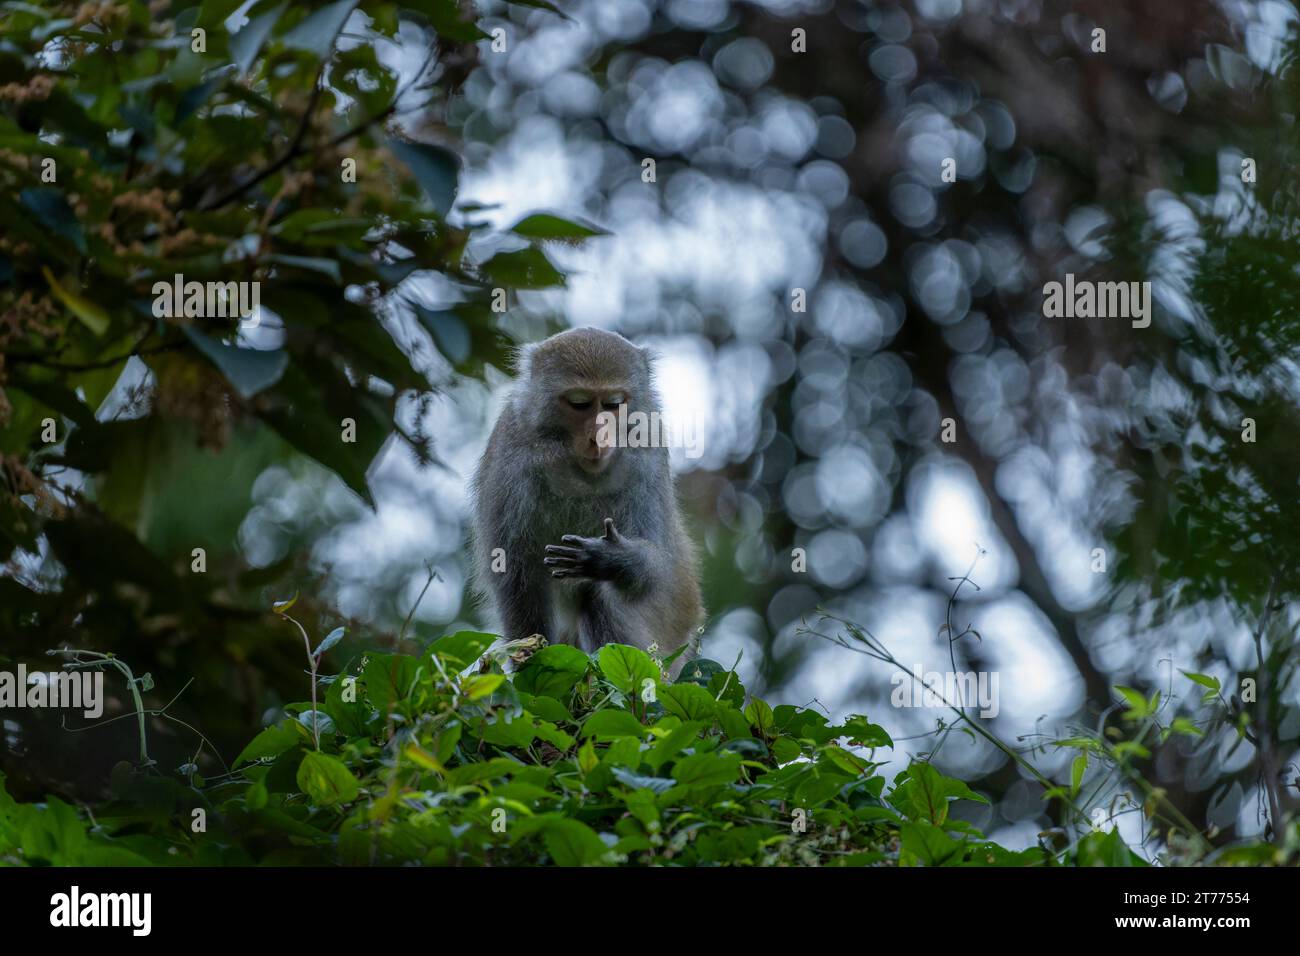 Primate macaque de roche formosan endémique à taiwan Banque D'Images